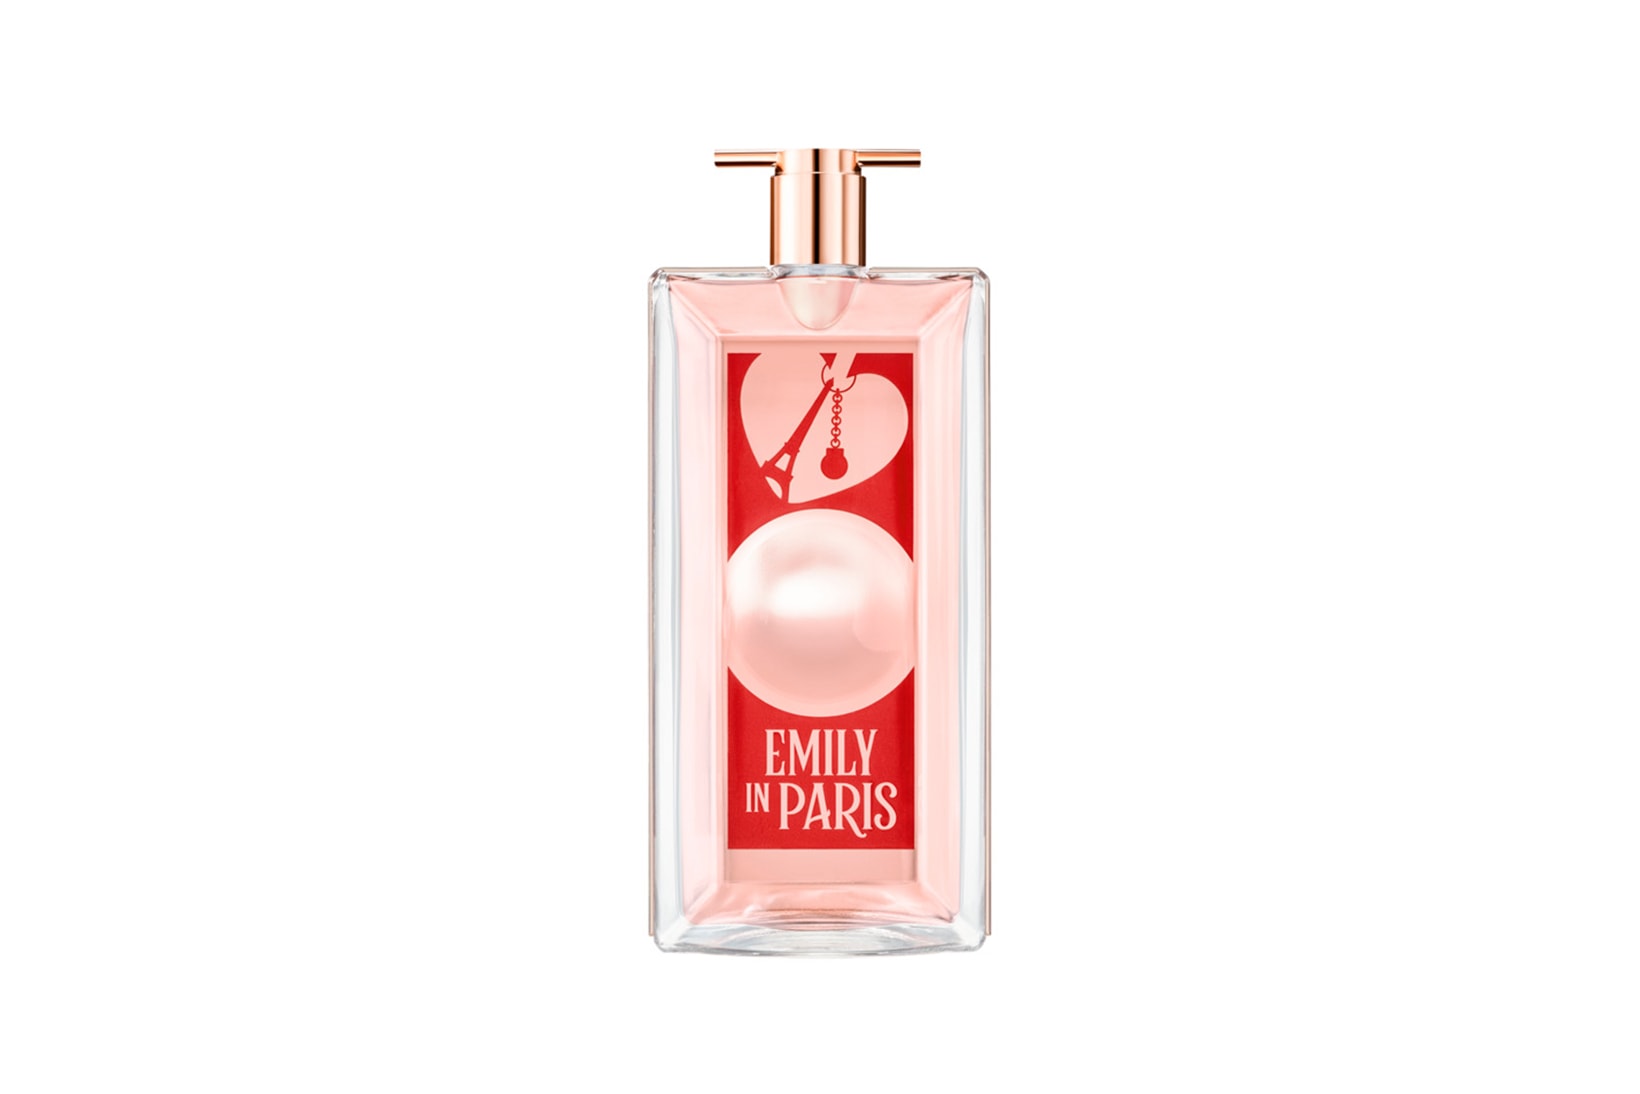 Emily in Paris Lancôme Lily Collins Netflix TV Show Beauty Perfume